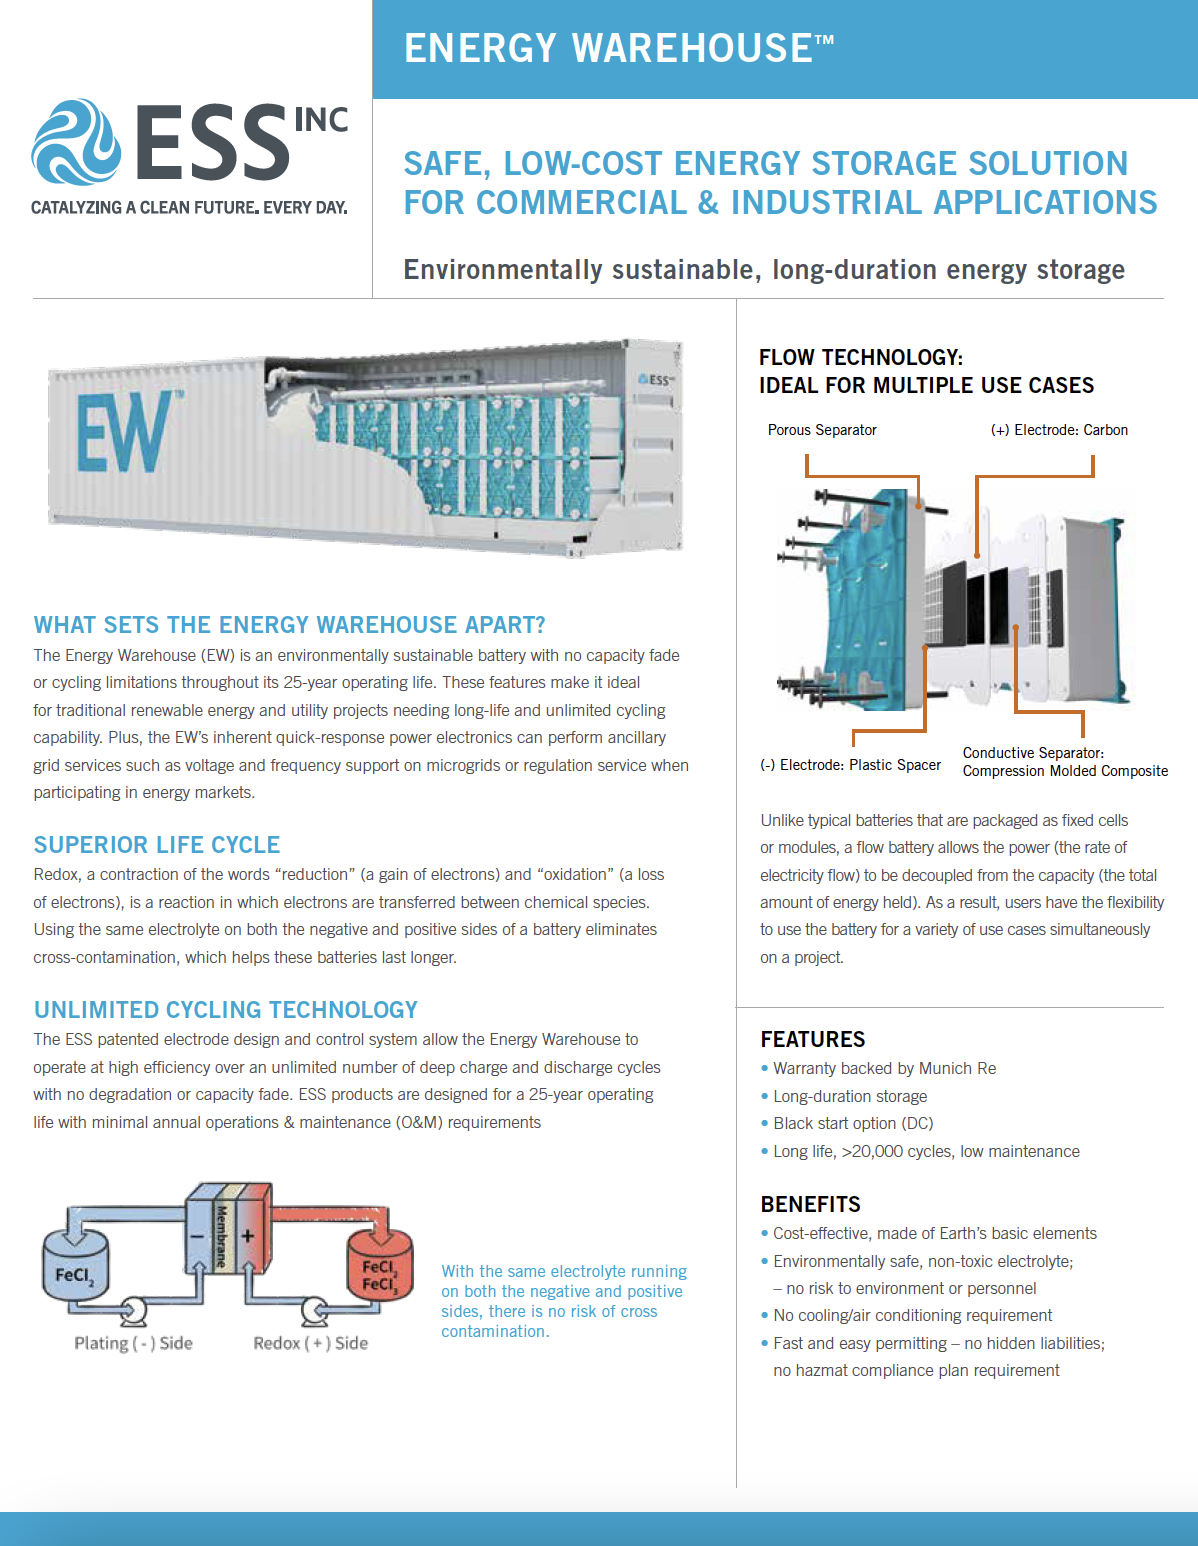 Energy warehouse datasheet image 03-19-2021